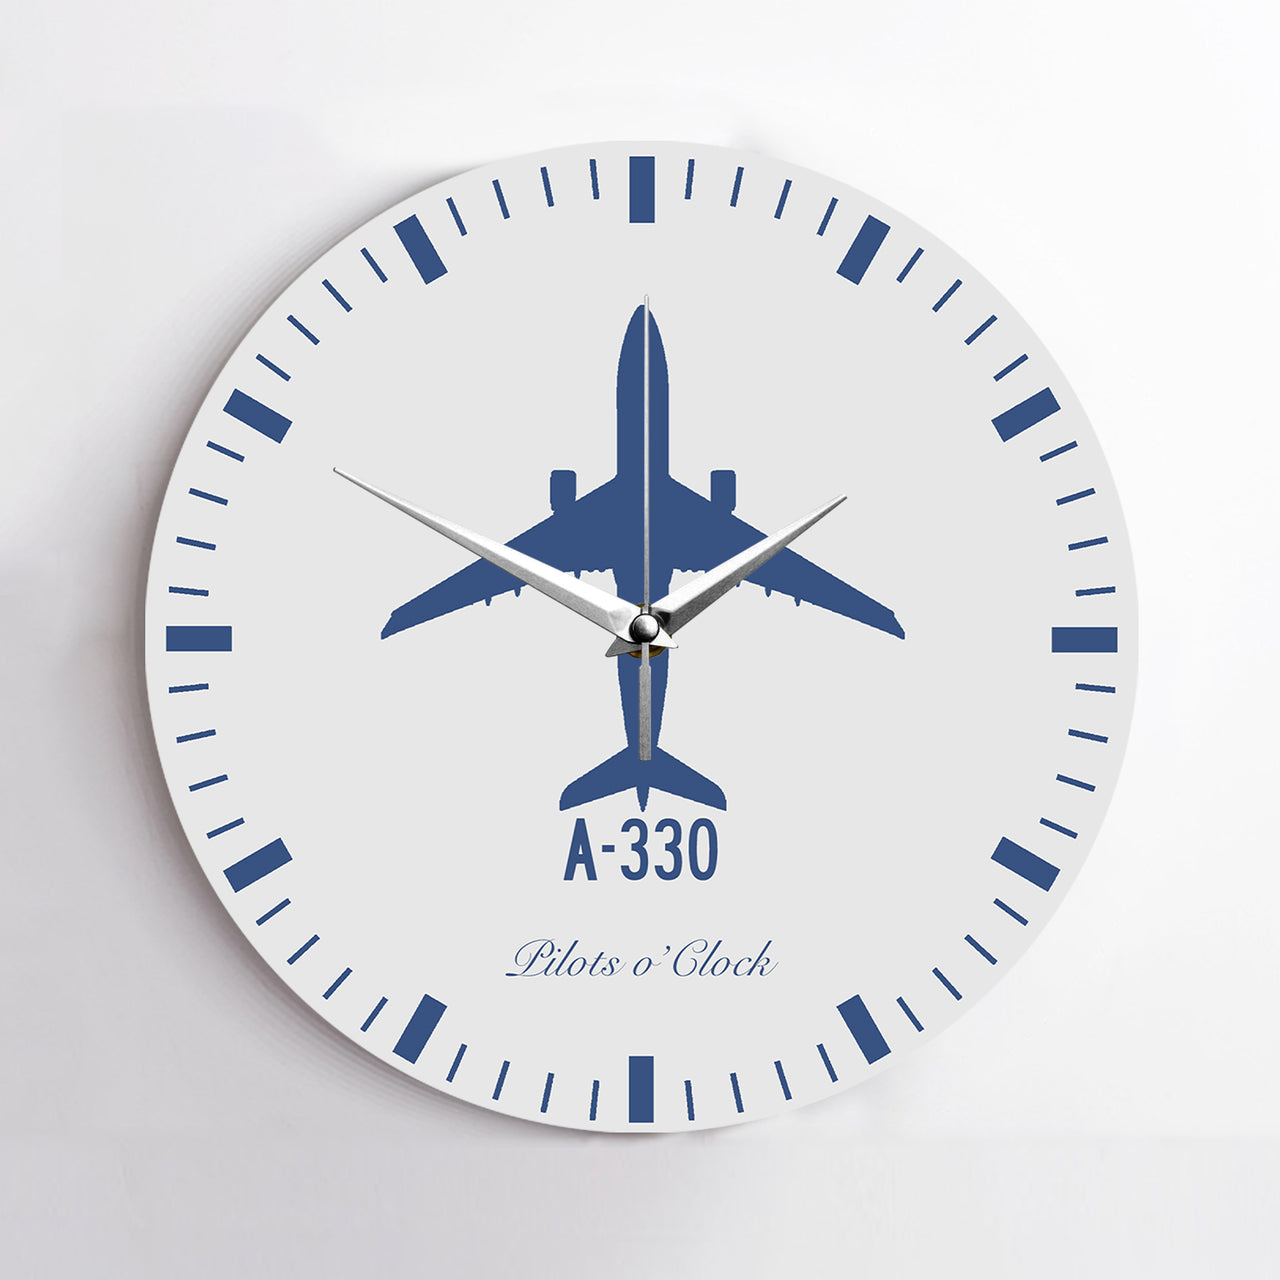 Airbus A330 Printed Wall Clocks